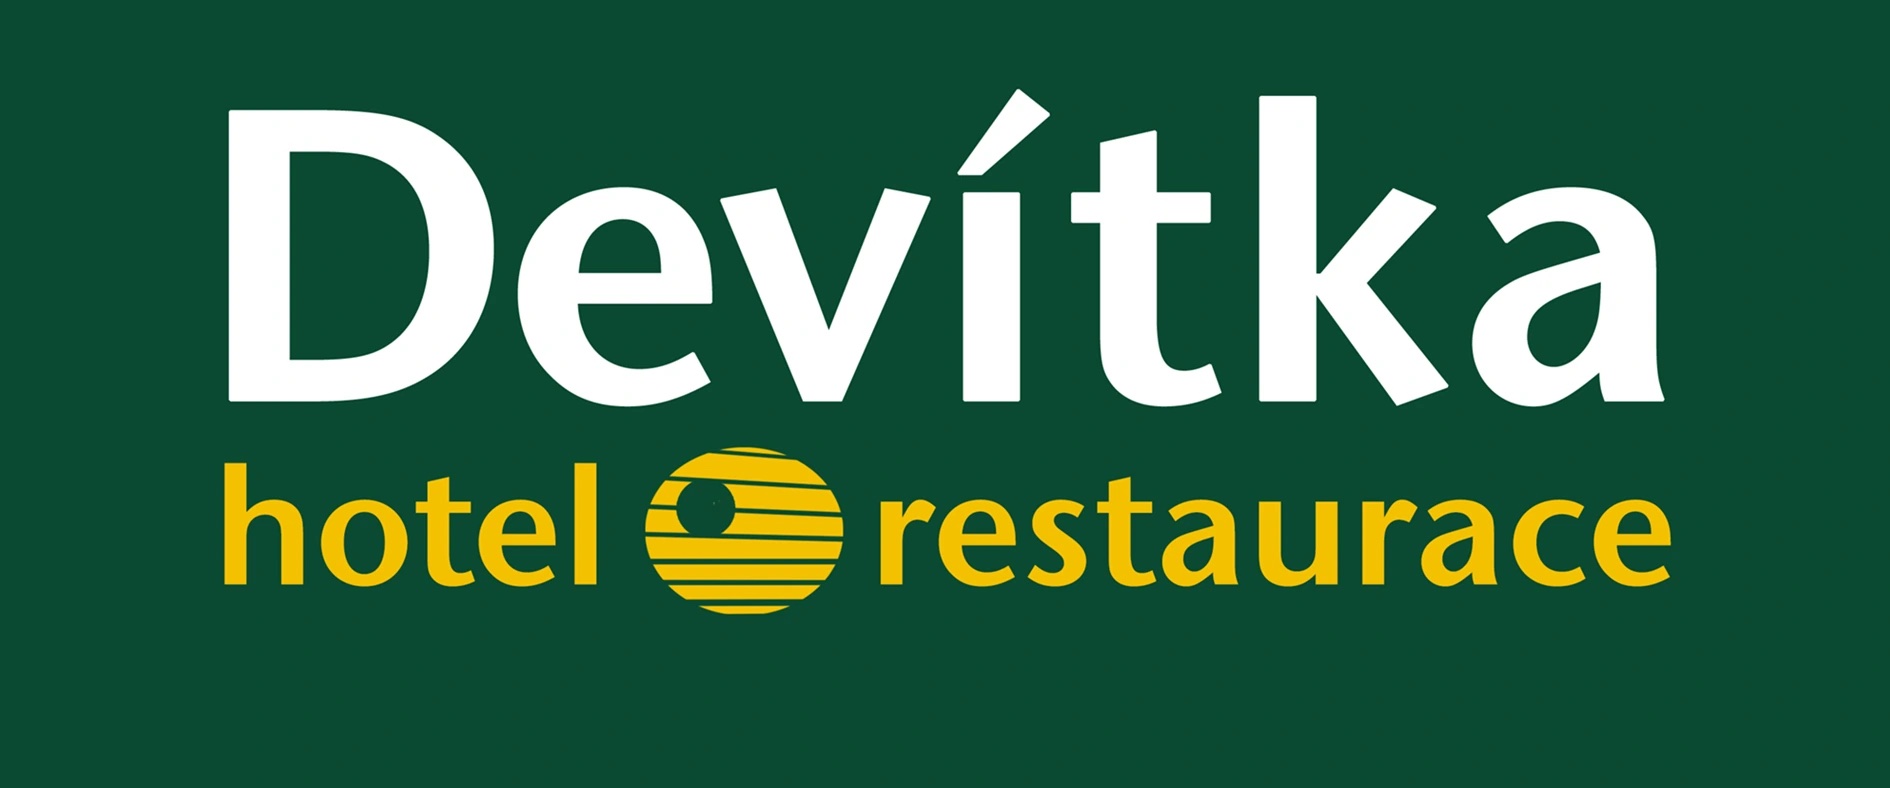 Hotel Devitka